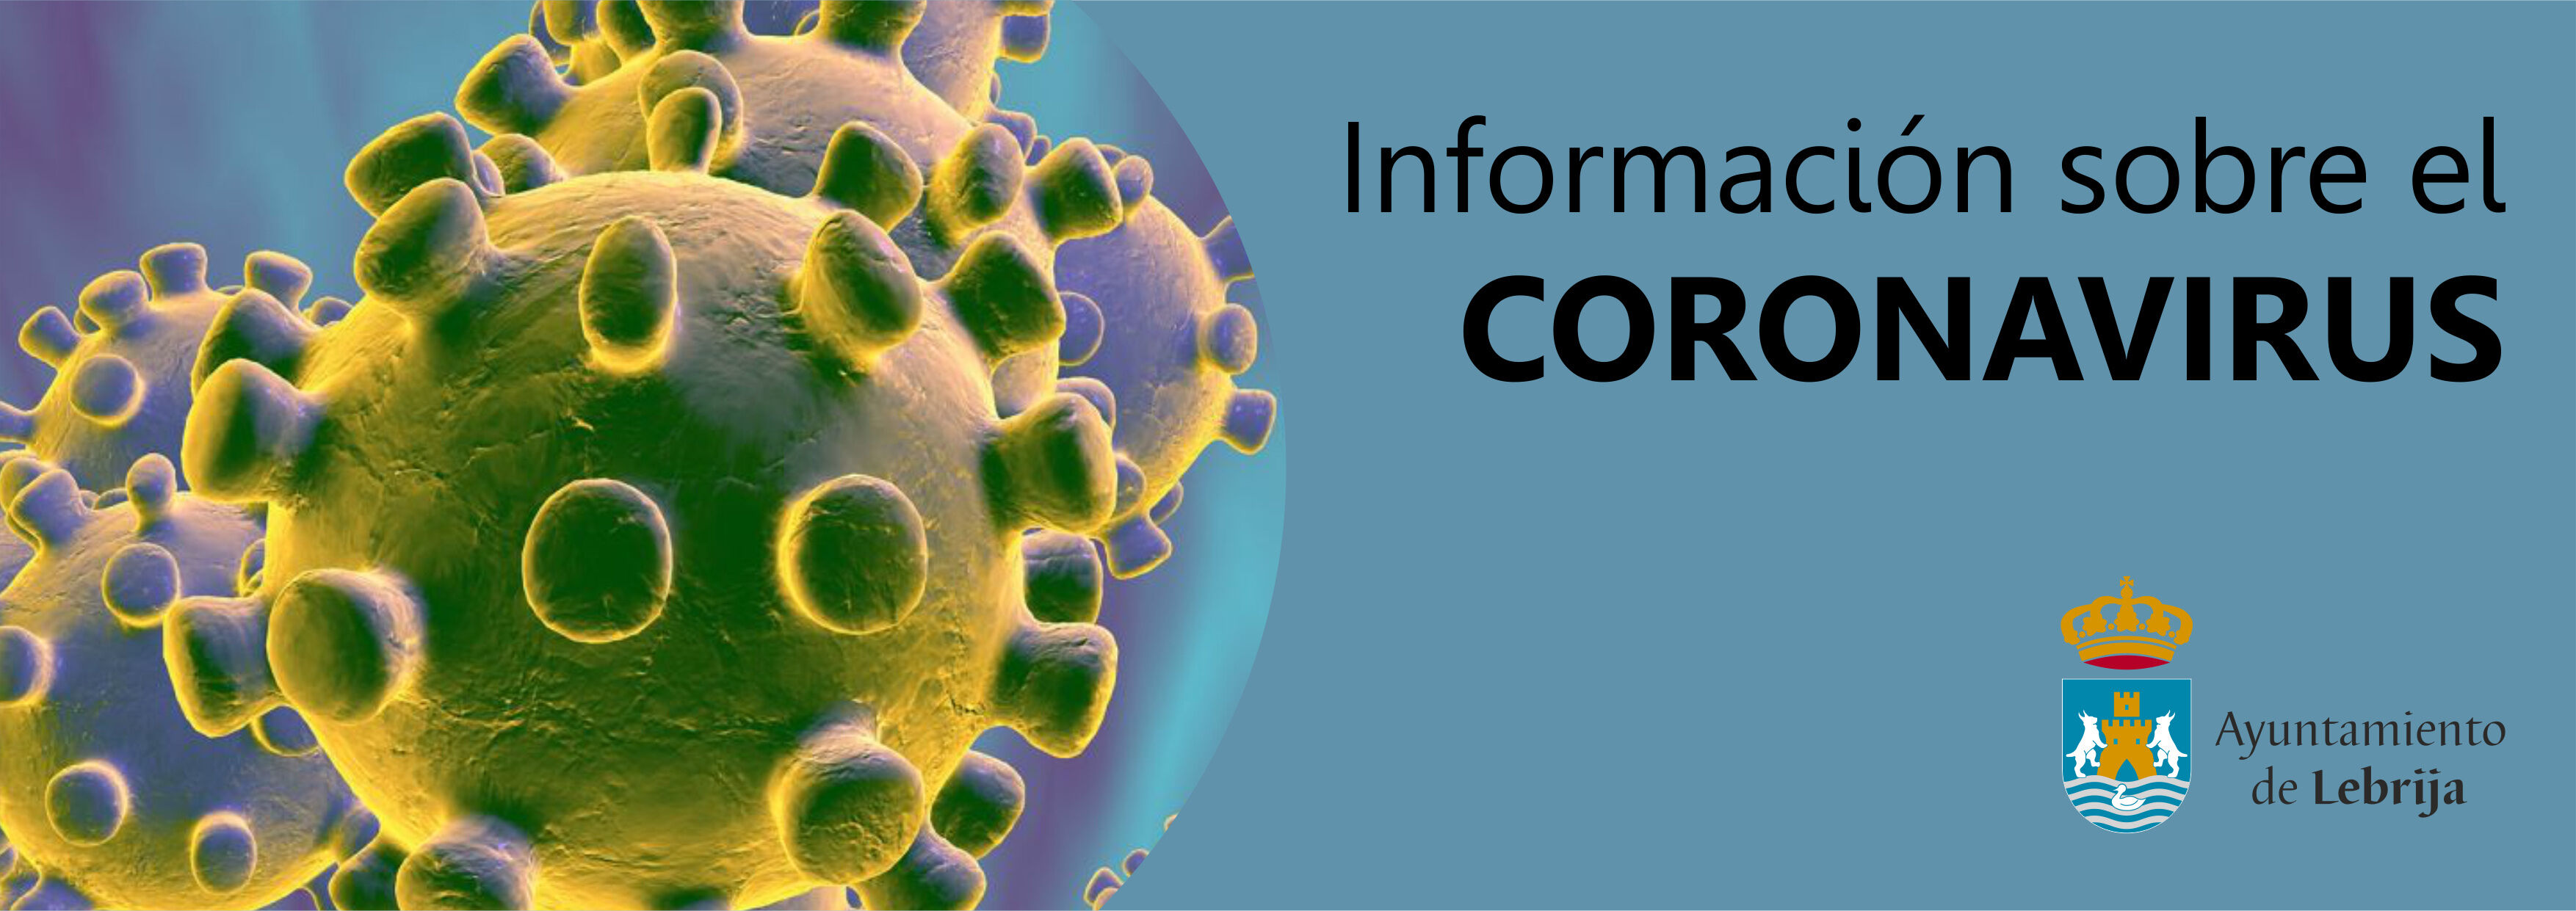 Información Coronavirus